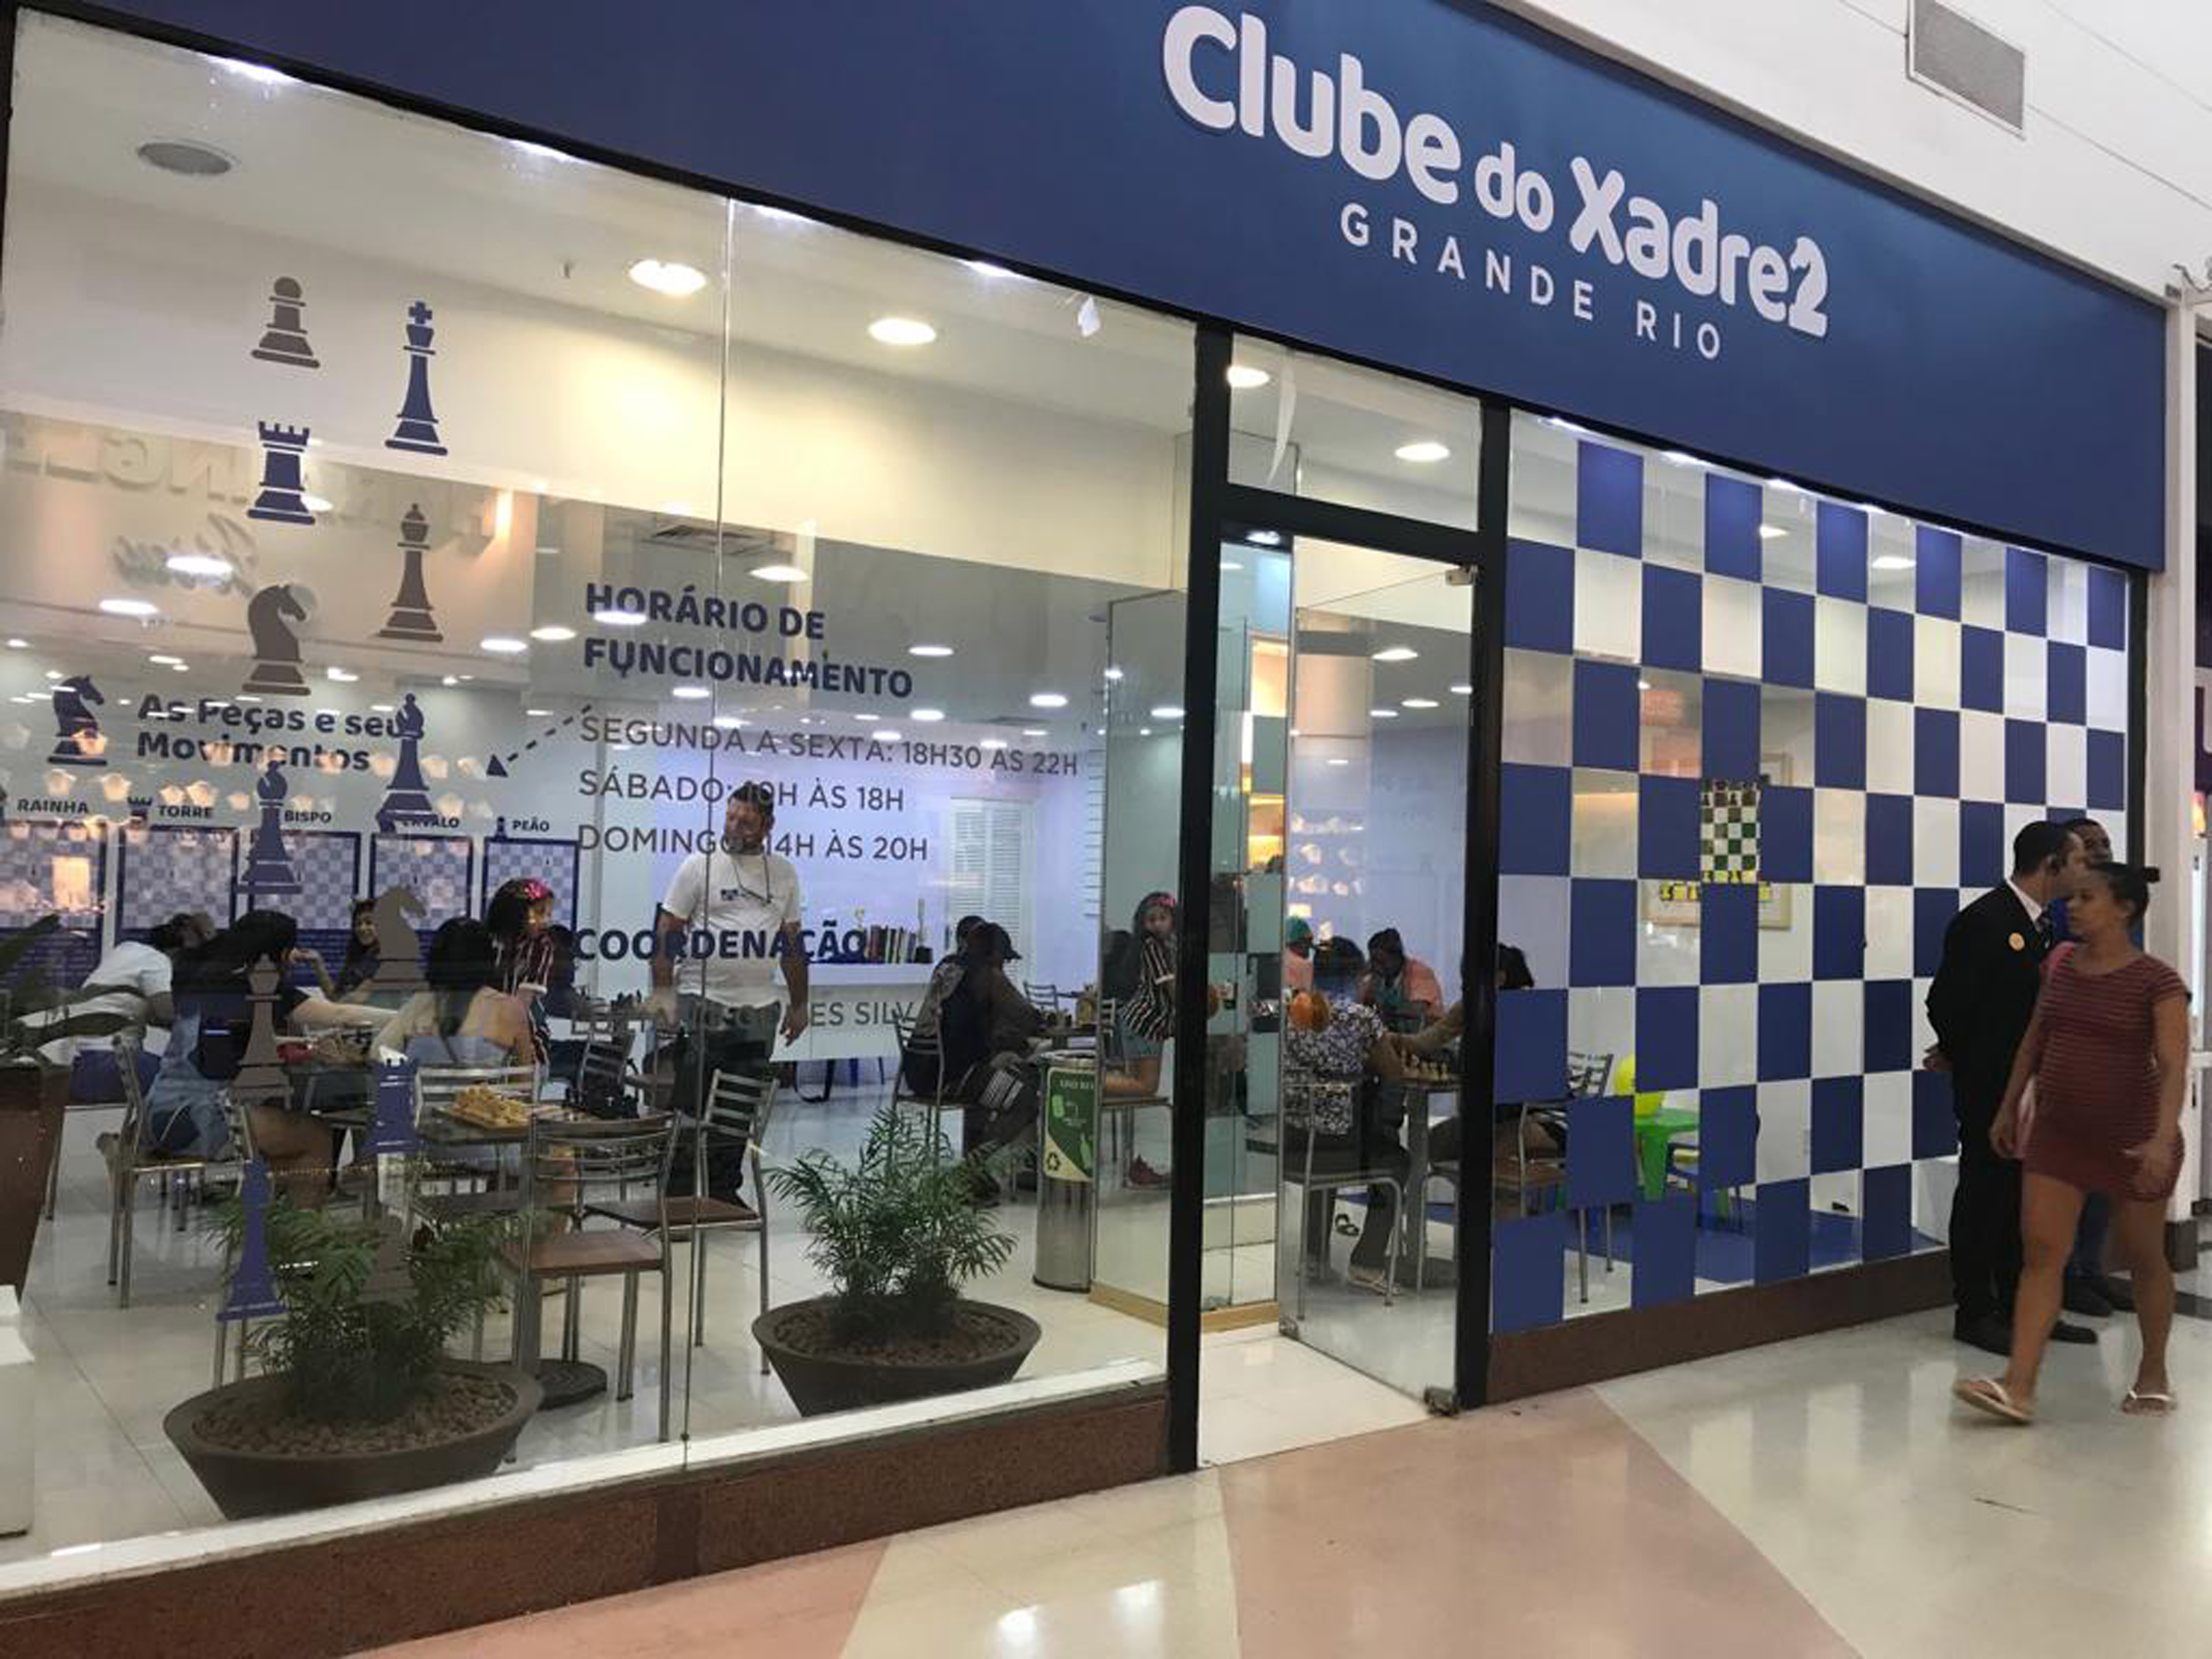 West Shopping faz sucesso com seu Clube de Xadrez